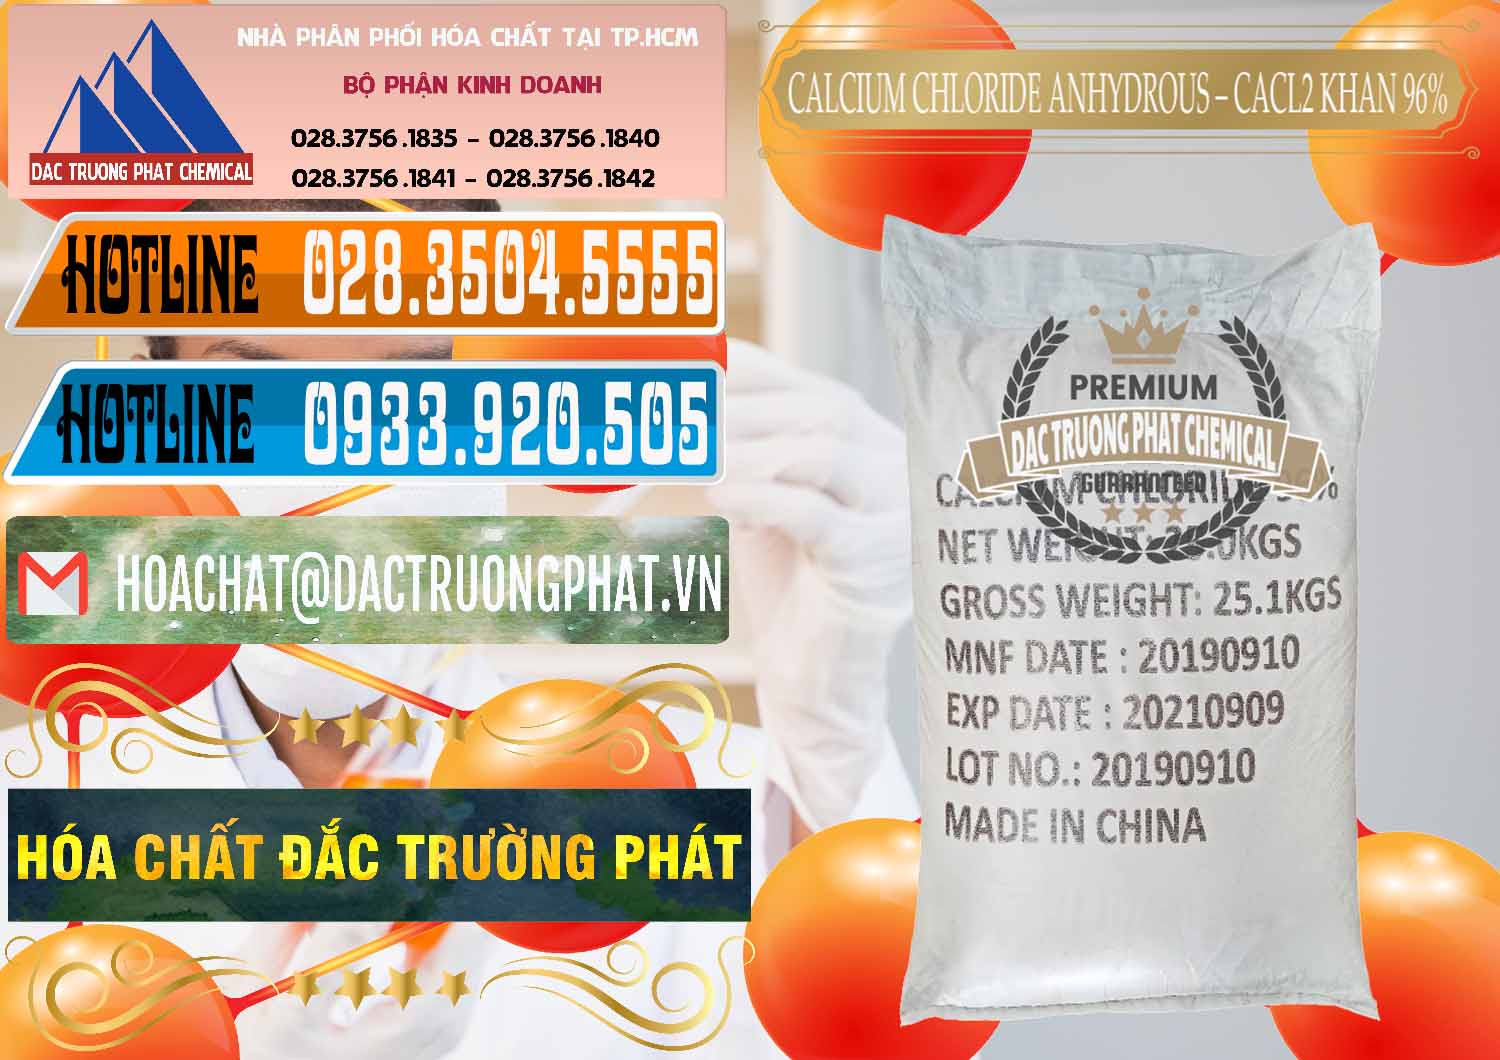 Đơn vị chuyên bán & cung cấp CaCl2 – Canxi Clorua Anhydrous Khan 96% Trung Quốc China - 0043 - Nhà phân phối & cung cấp hóa chất tại TP.HCM - stmp.net